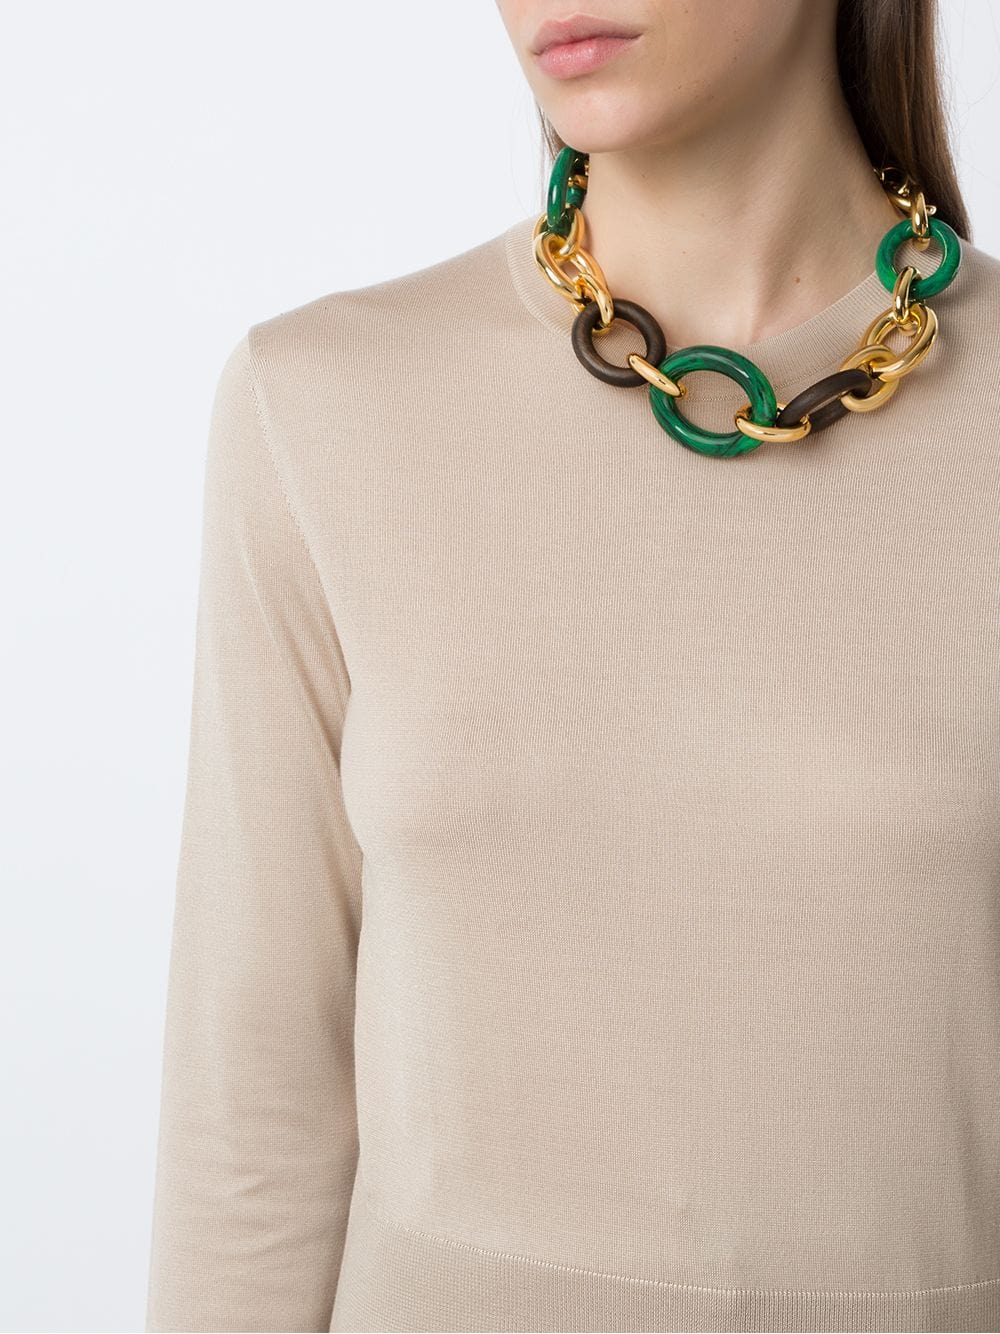 Dolce & Gabbana Chain-Link Statement Necklace